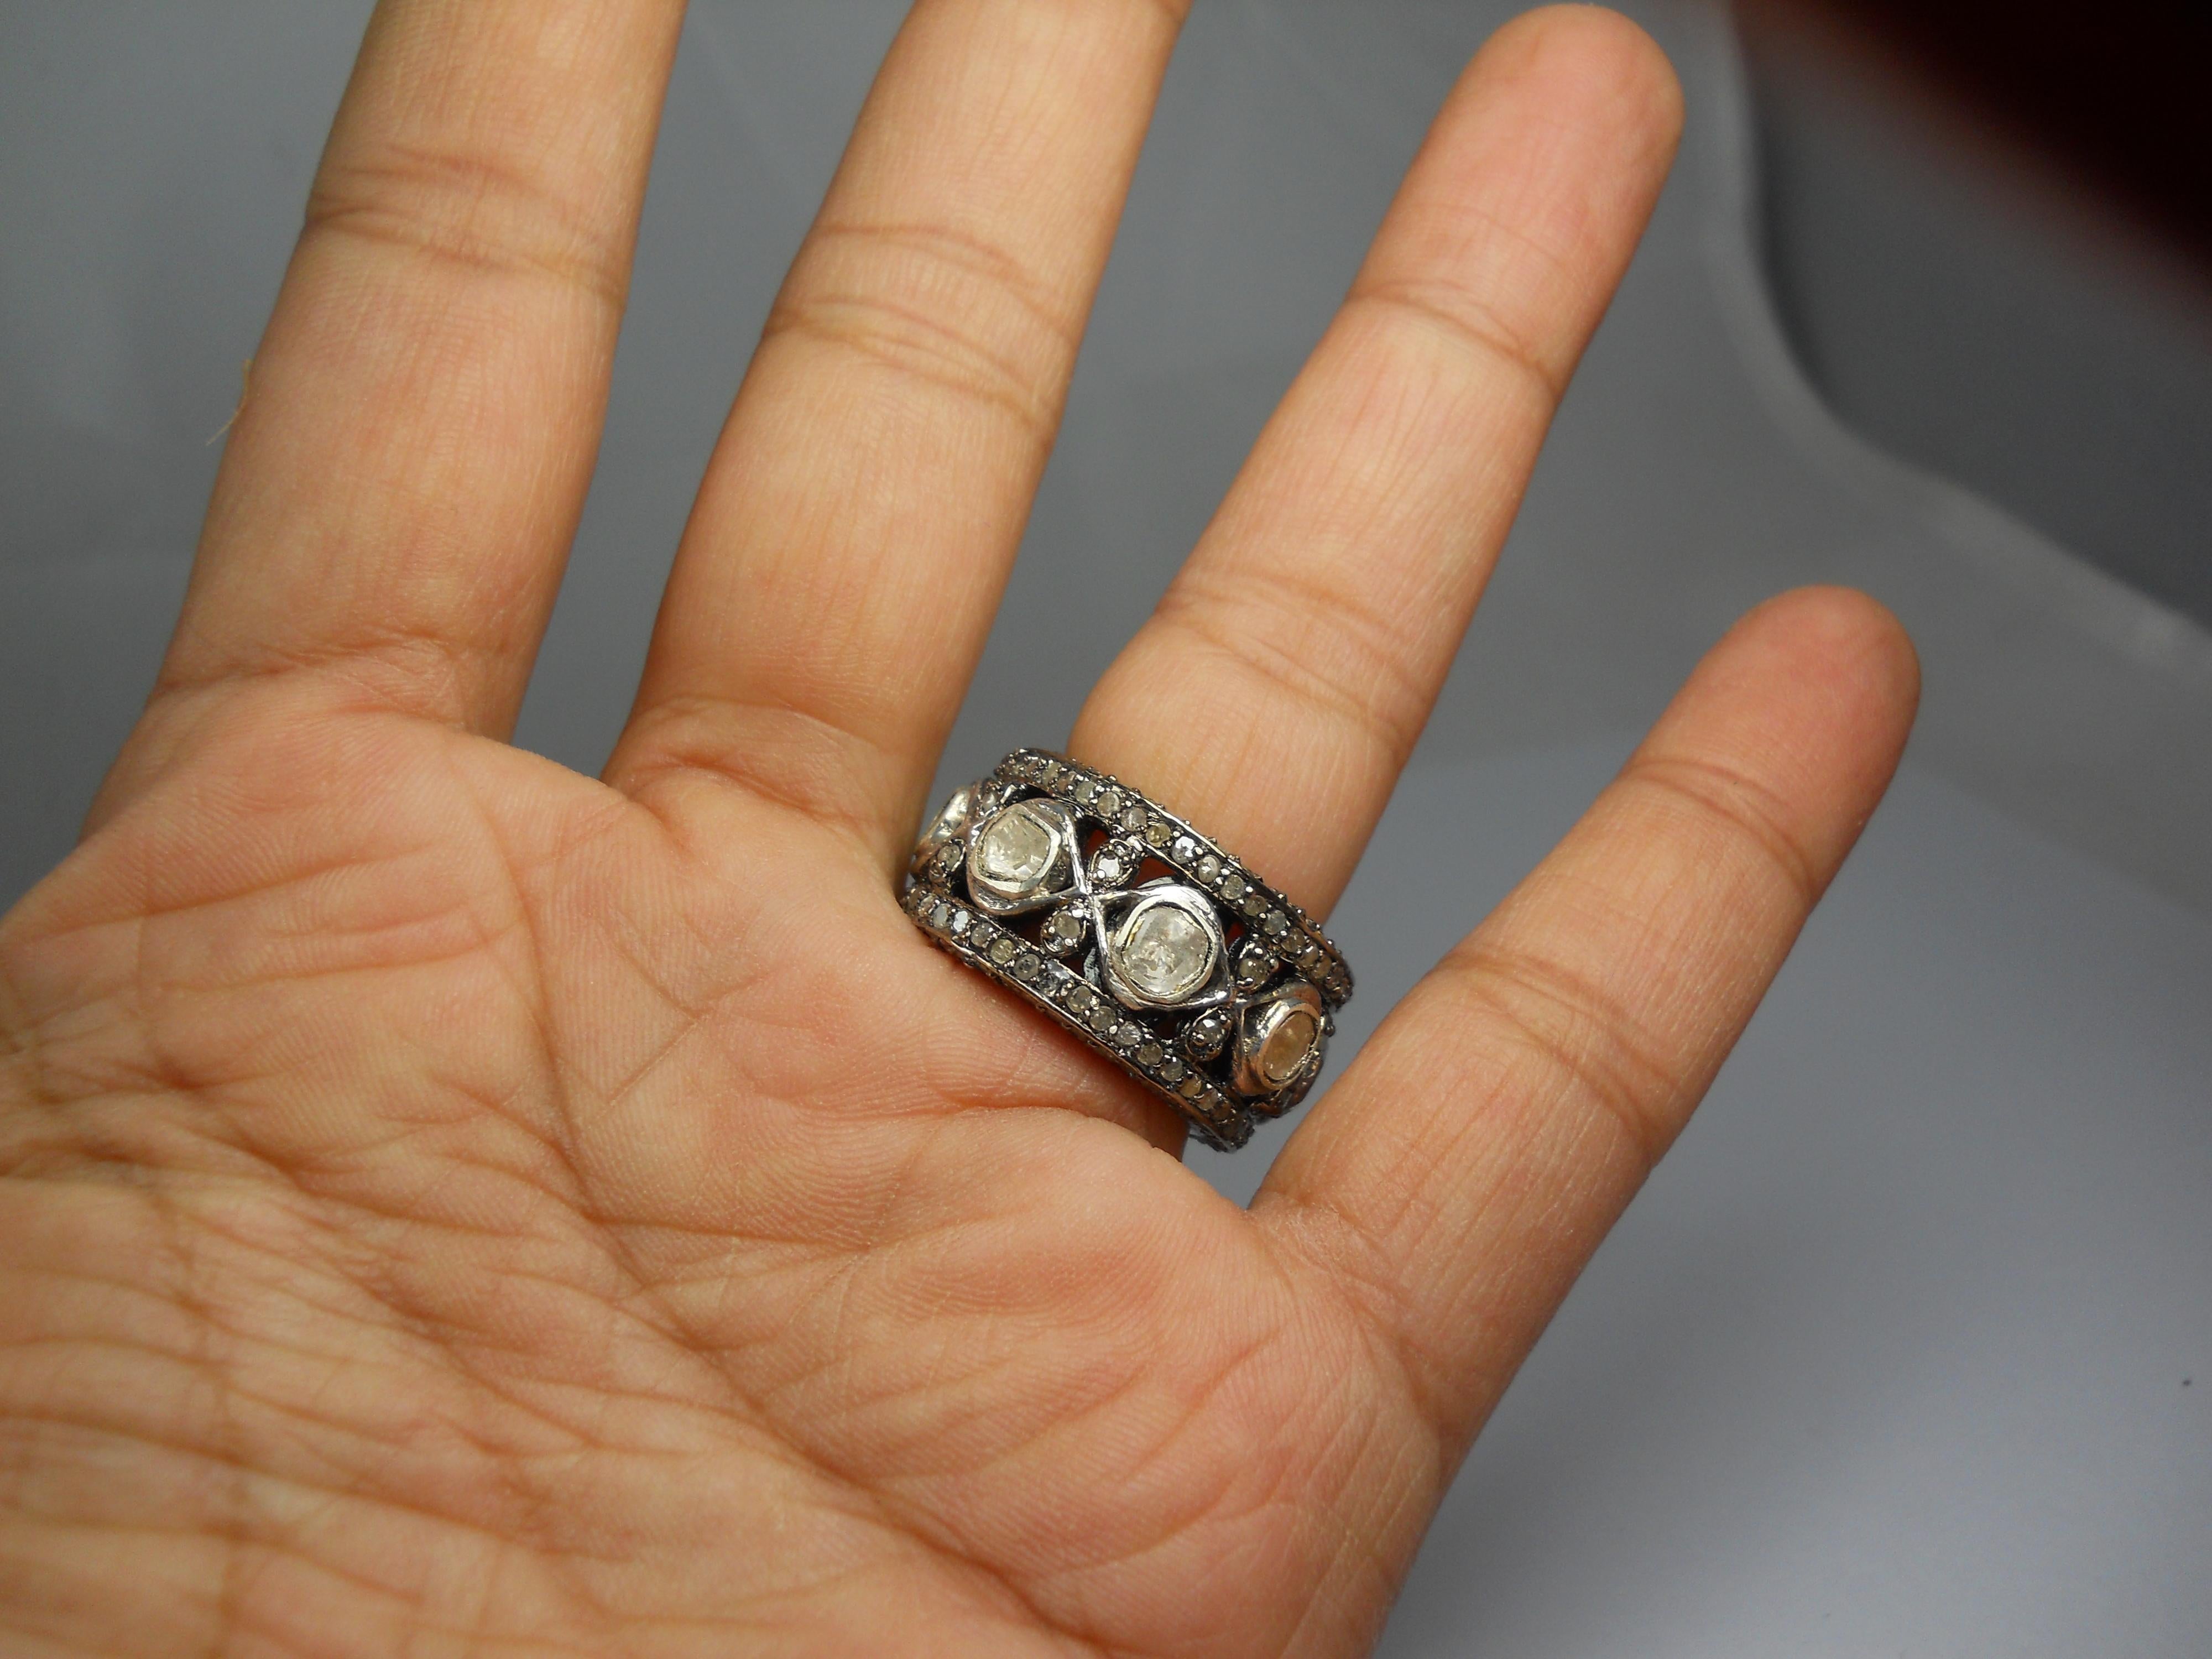 -Diamanttyp- Natürlicher Rosenschliff, natürlicher ungeschliffener Diamant

-Diamantfarben - weiß mit einem Hauch von Grau

-Gewicht des Diamanten - 2,50ctw

-Metall- 925 Sterling Silber

Metallfarbe - oxidiertes Silber und Gelbgold beschichtet
